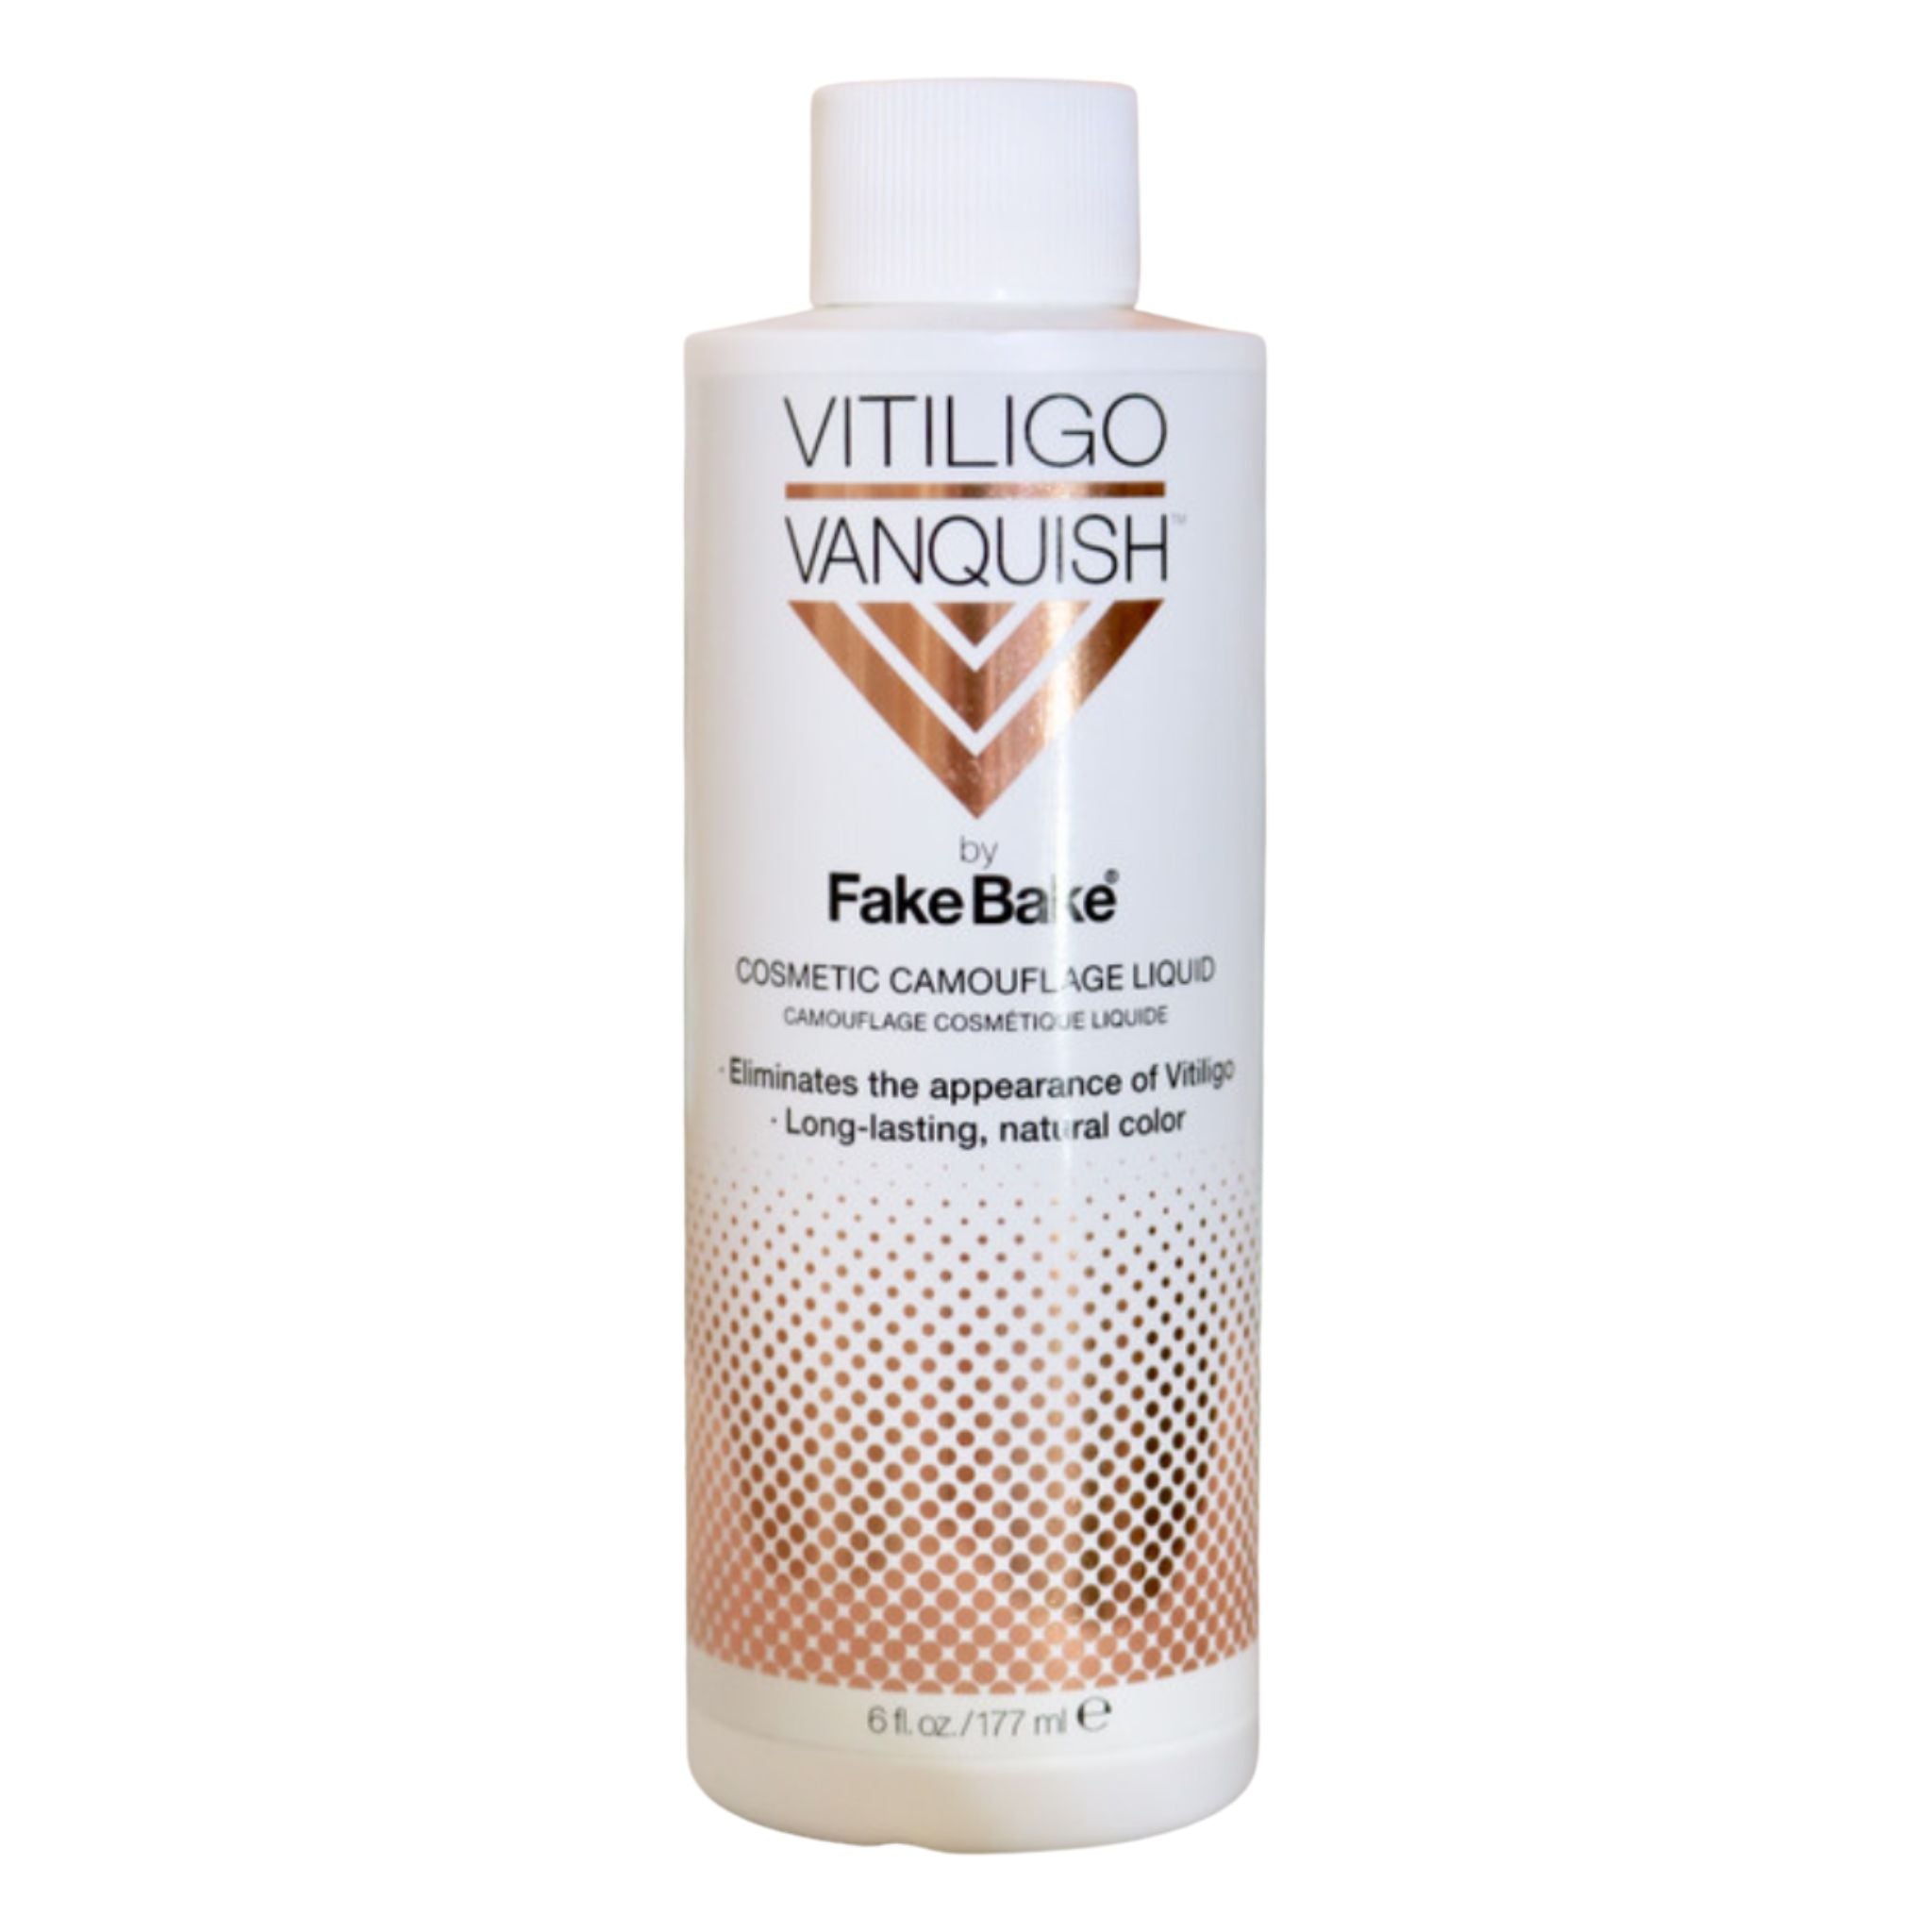 Fake Bake® Vitiligo Vanquish Refill - Bottle Only